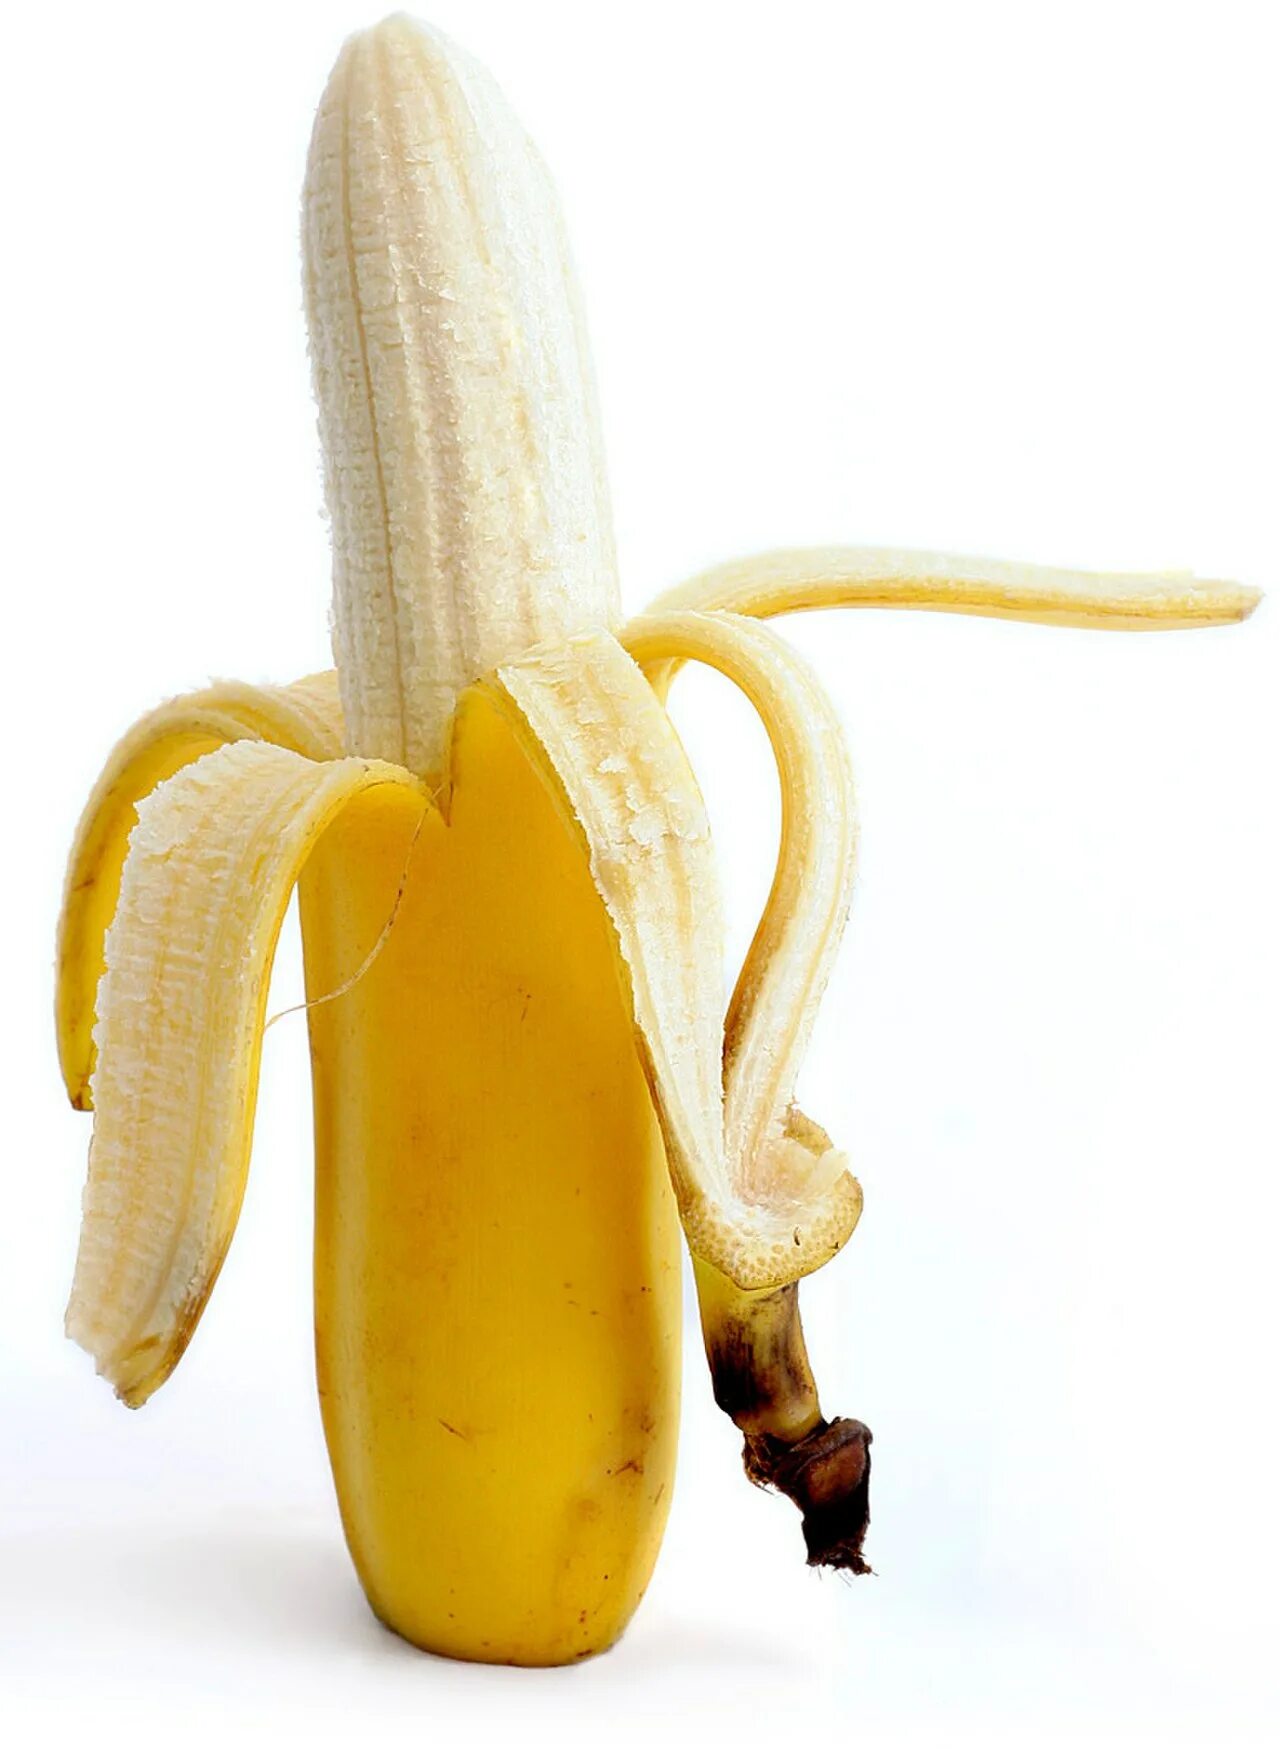 Https muz ru. Бананадин. Банан. Банан открытый. Вертикальный банан.